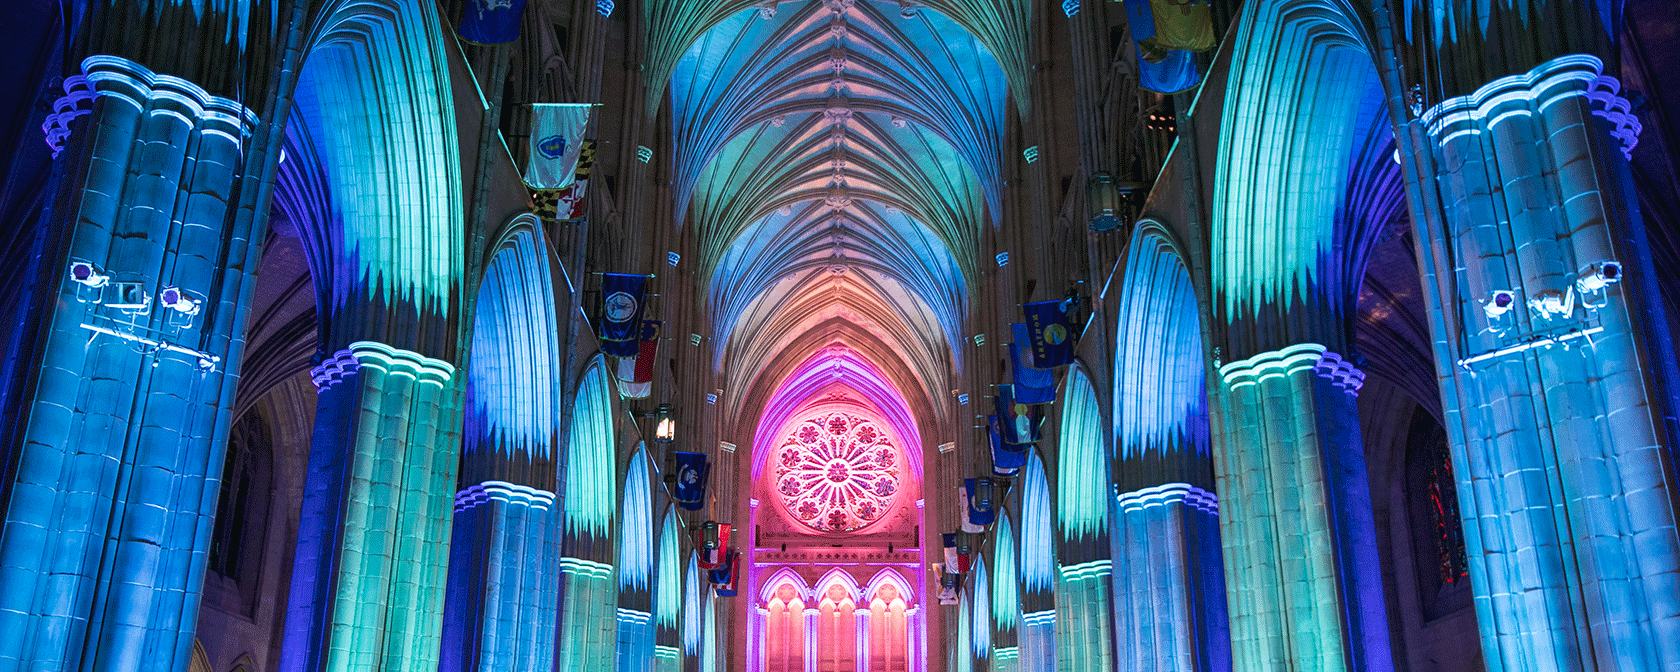 La cattedrale si illumina all'interno con luci blu e rosa (Credit: Jason Dixson)